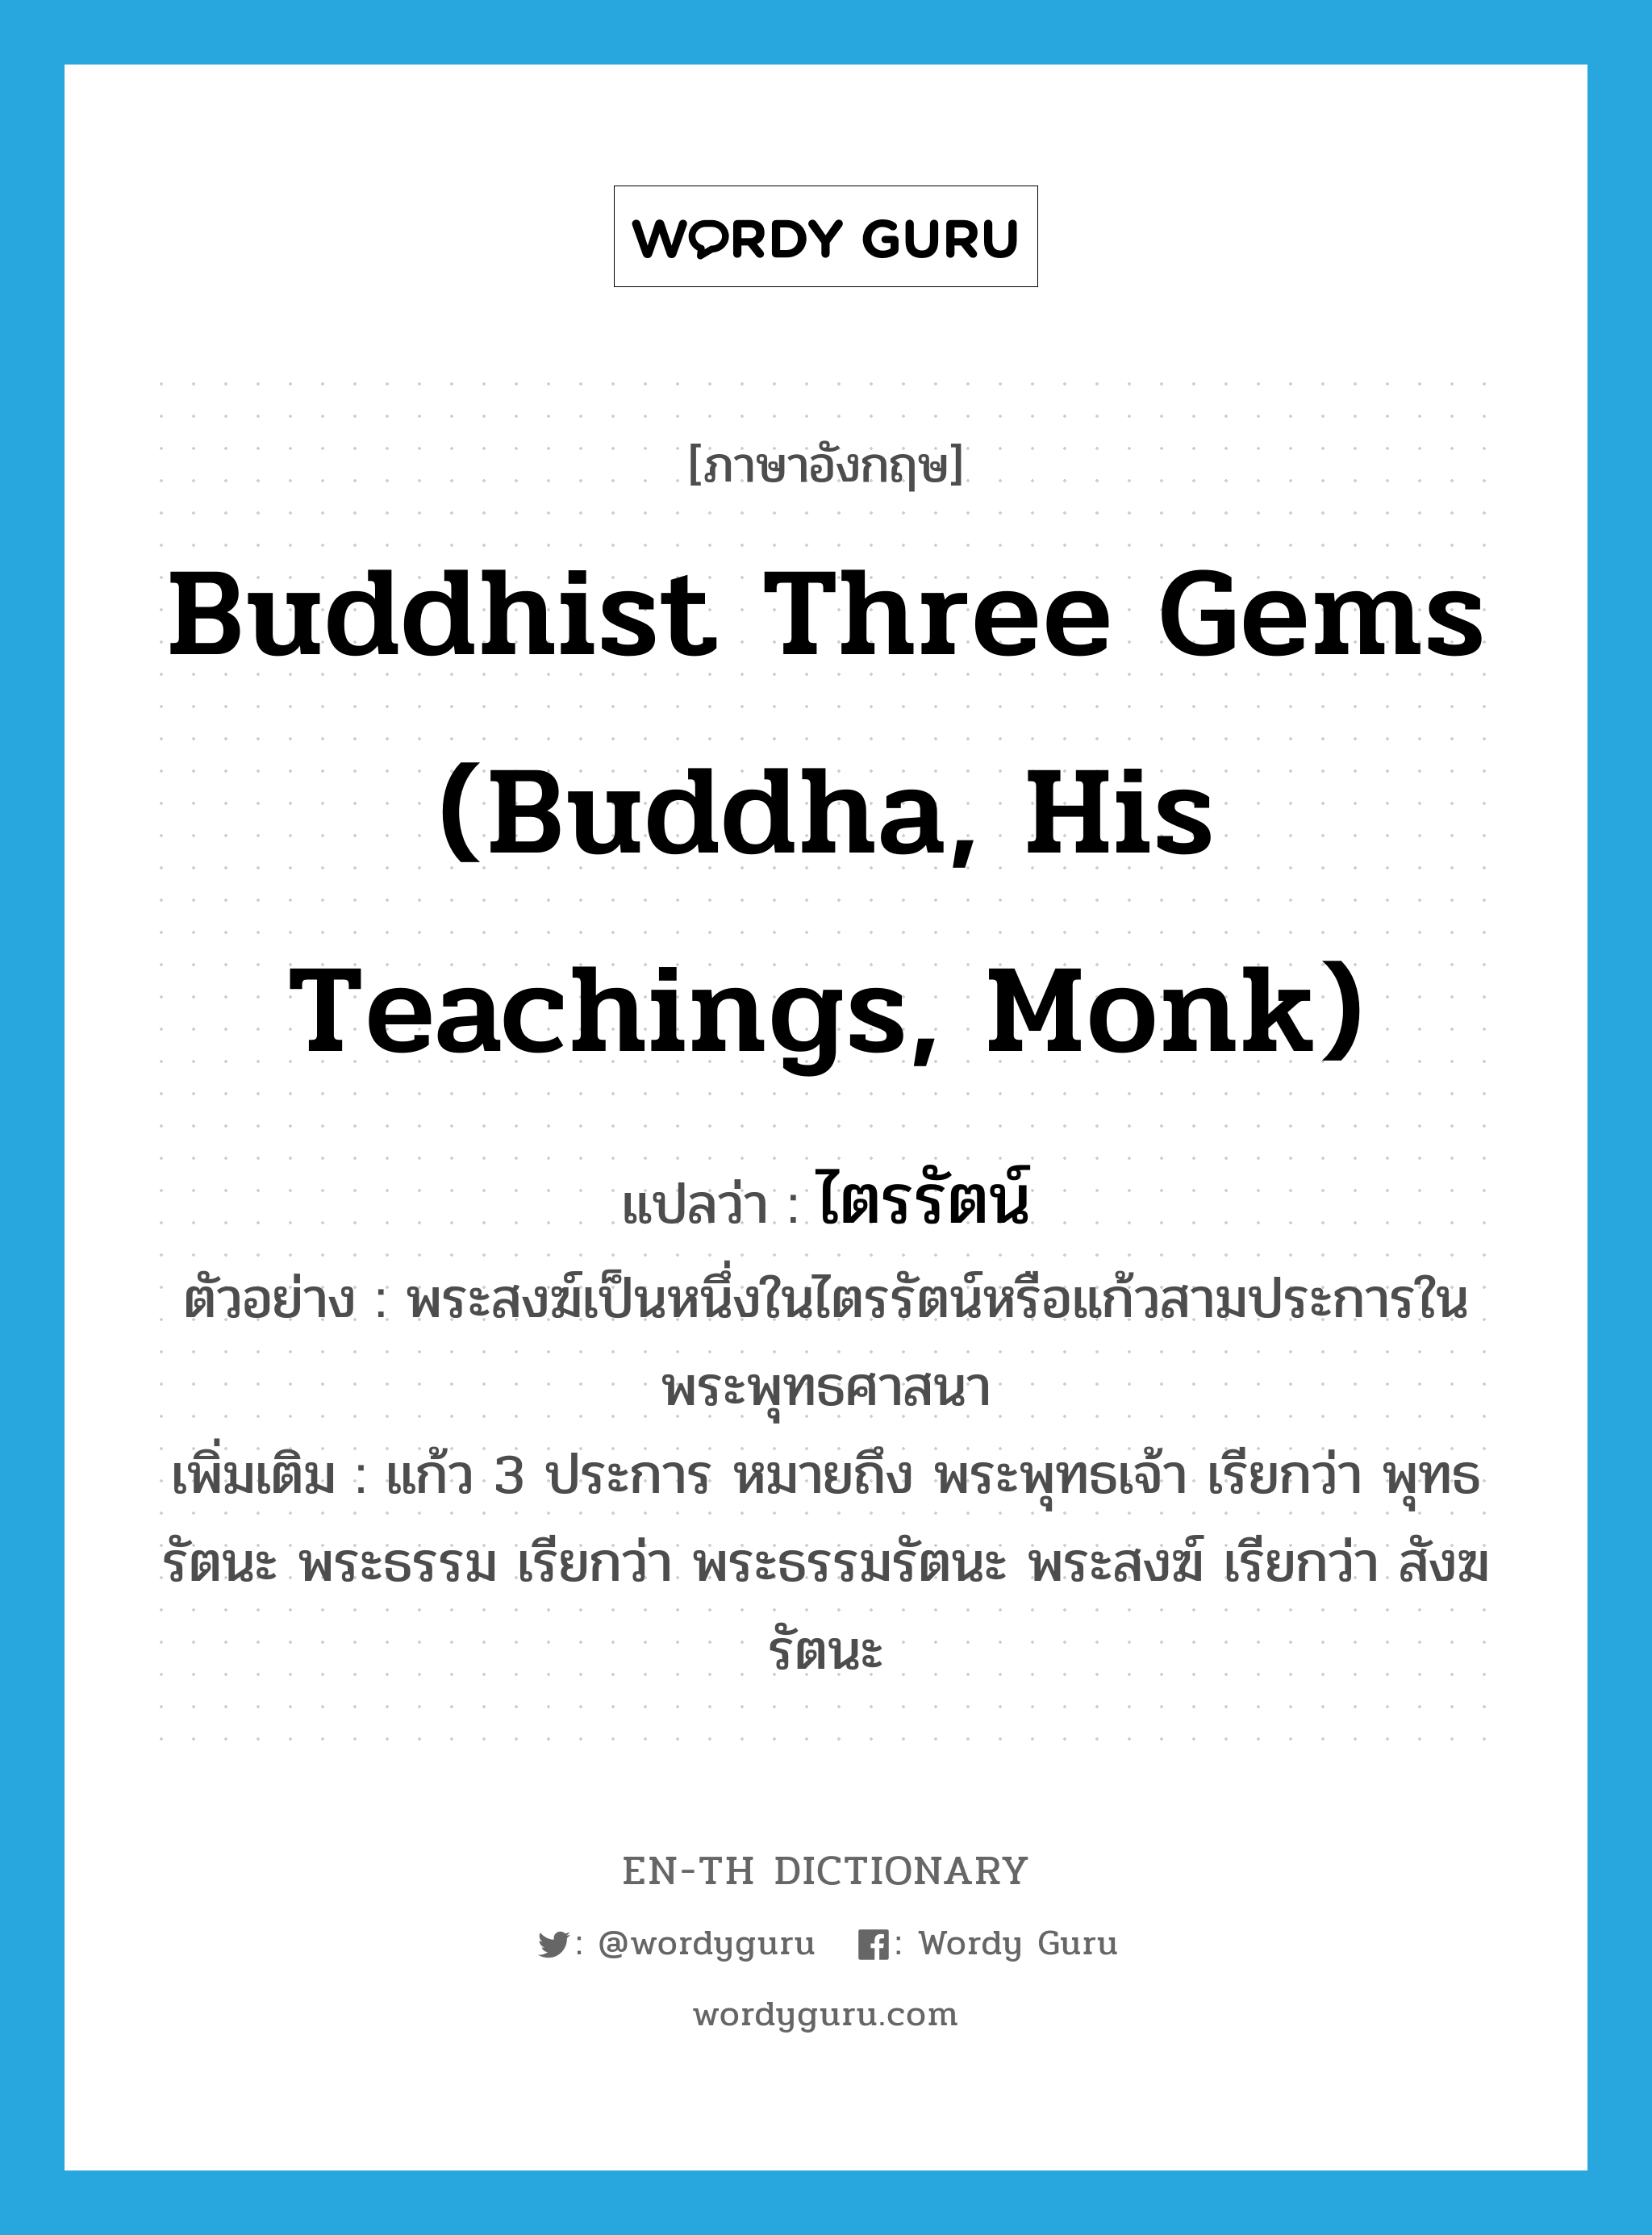 Buddhist Three Gems (Buddha, His Teachings, Monk) แปลว่า?, คำศัพท์ภาษาอังกฤษ Buddhist Three Gems (Buddha, His Teachings, Monk) แปลว่า ไตรรัตน์ ประเภท N ตัวอย่าง พระสงฆ์เป็นหนึ่งในไตรรัตน์หรือแก้วสามประการในพระพุทธศาสนา เพิ่มเติม แก้ว 3 ประการ หมายถึง พระพุทธเจ้า เรียกว่า พุทธรัตนะ พระธรรม เรียกว่า พระธรรมรัตนะ พระสงฆ์ เรียกว่า สังฆรัตนะ หมวด N